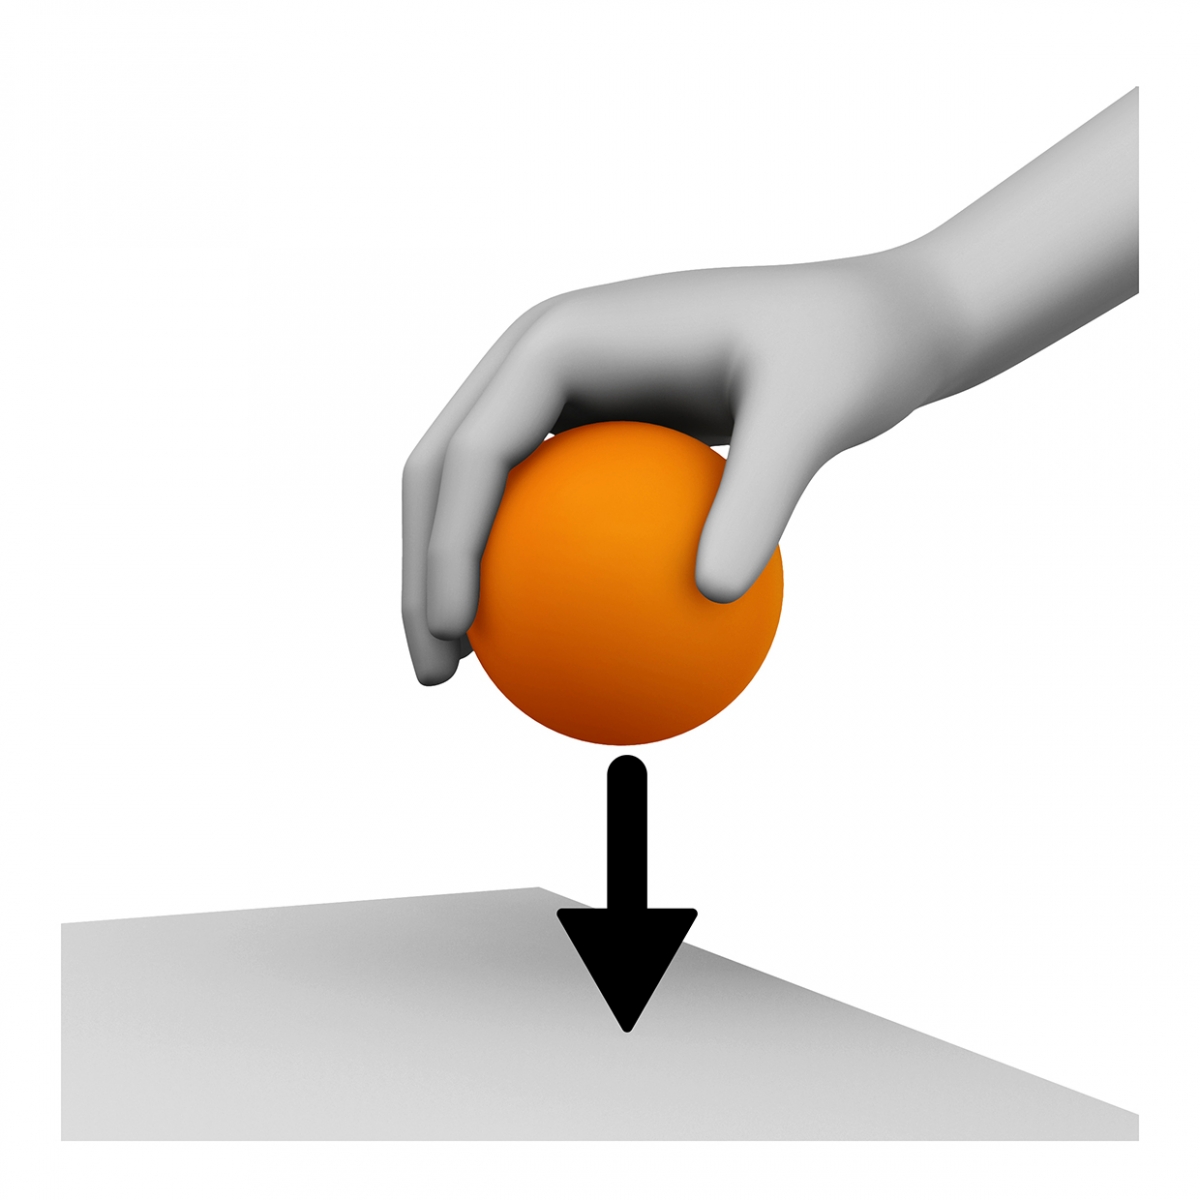 Imagen en la que se ve una mano cogiendo una pelota naranja de una superficie